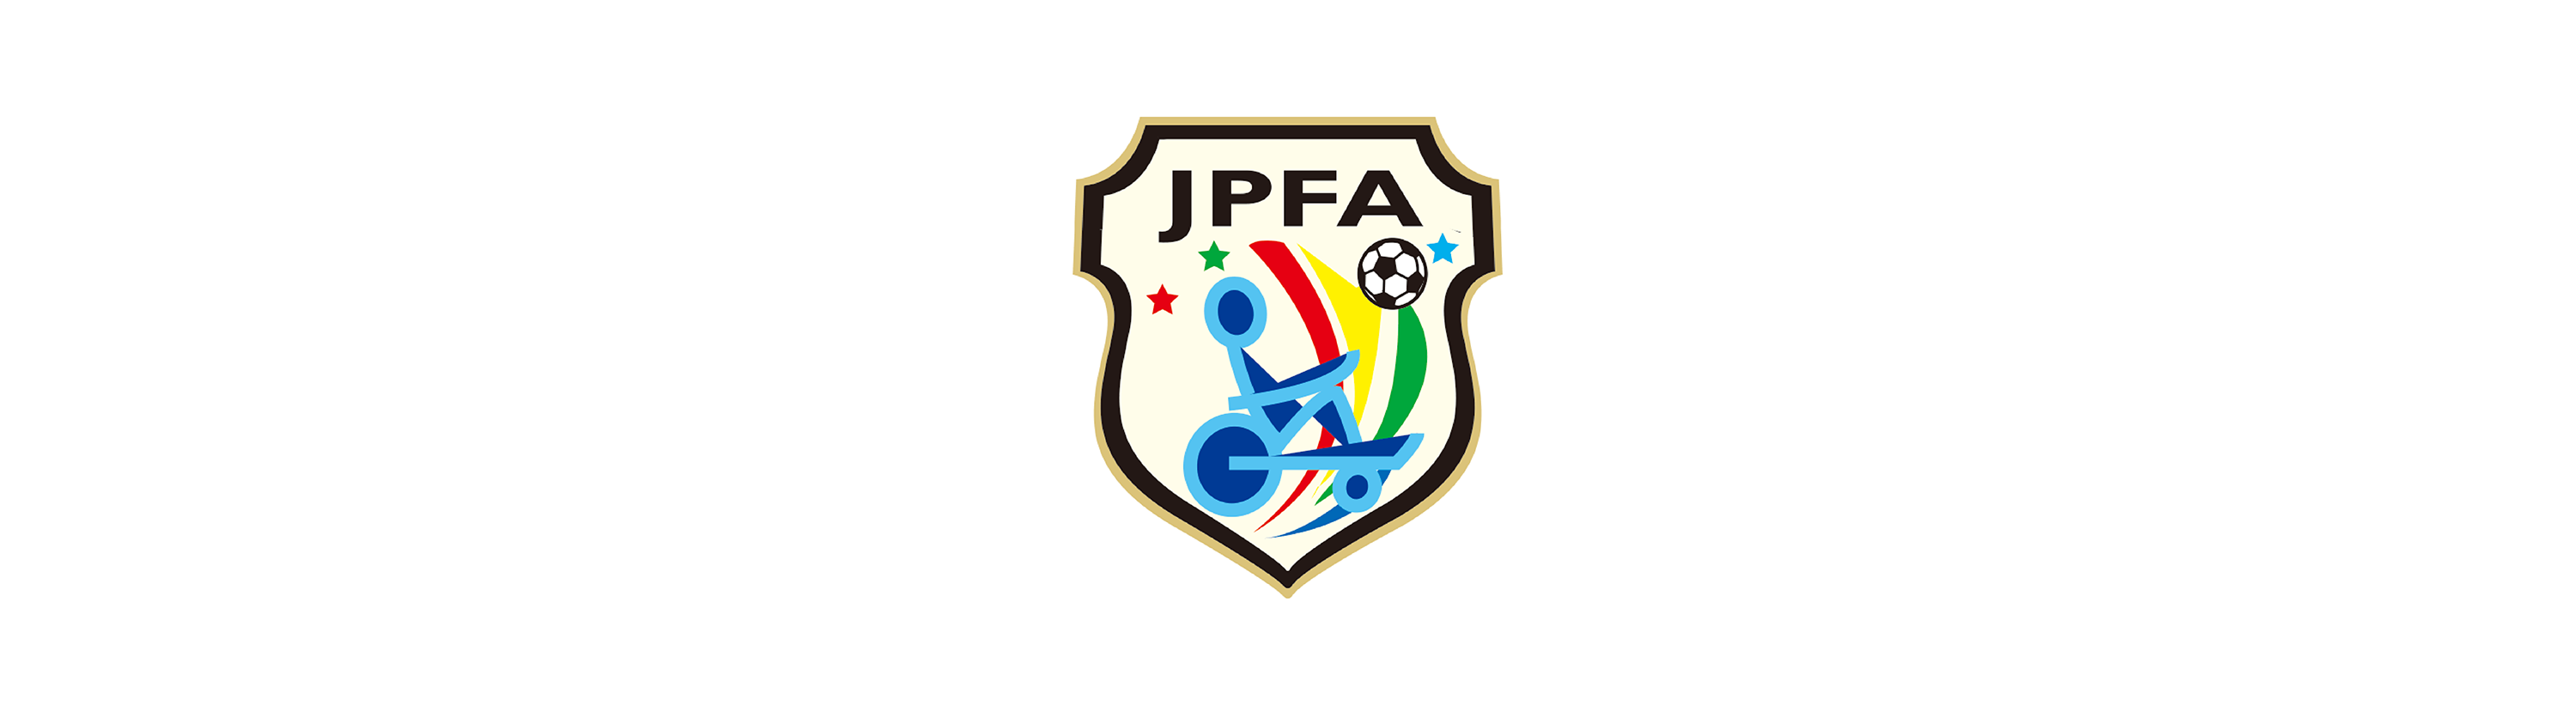 日本電動車椅子サッカー協会